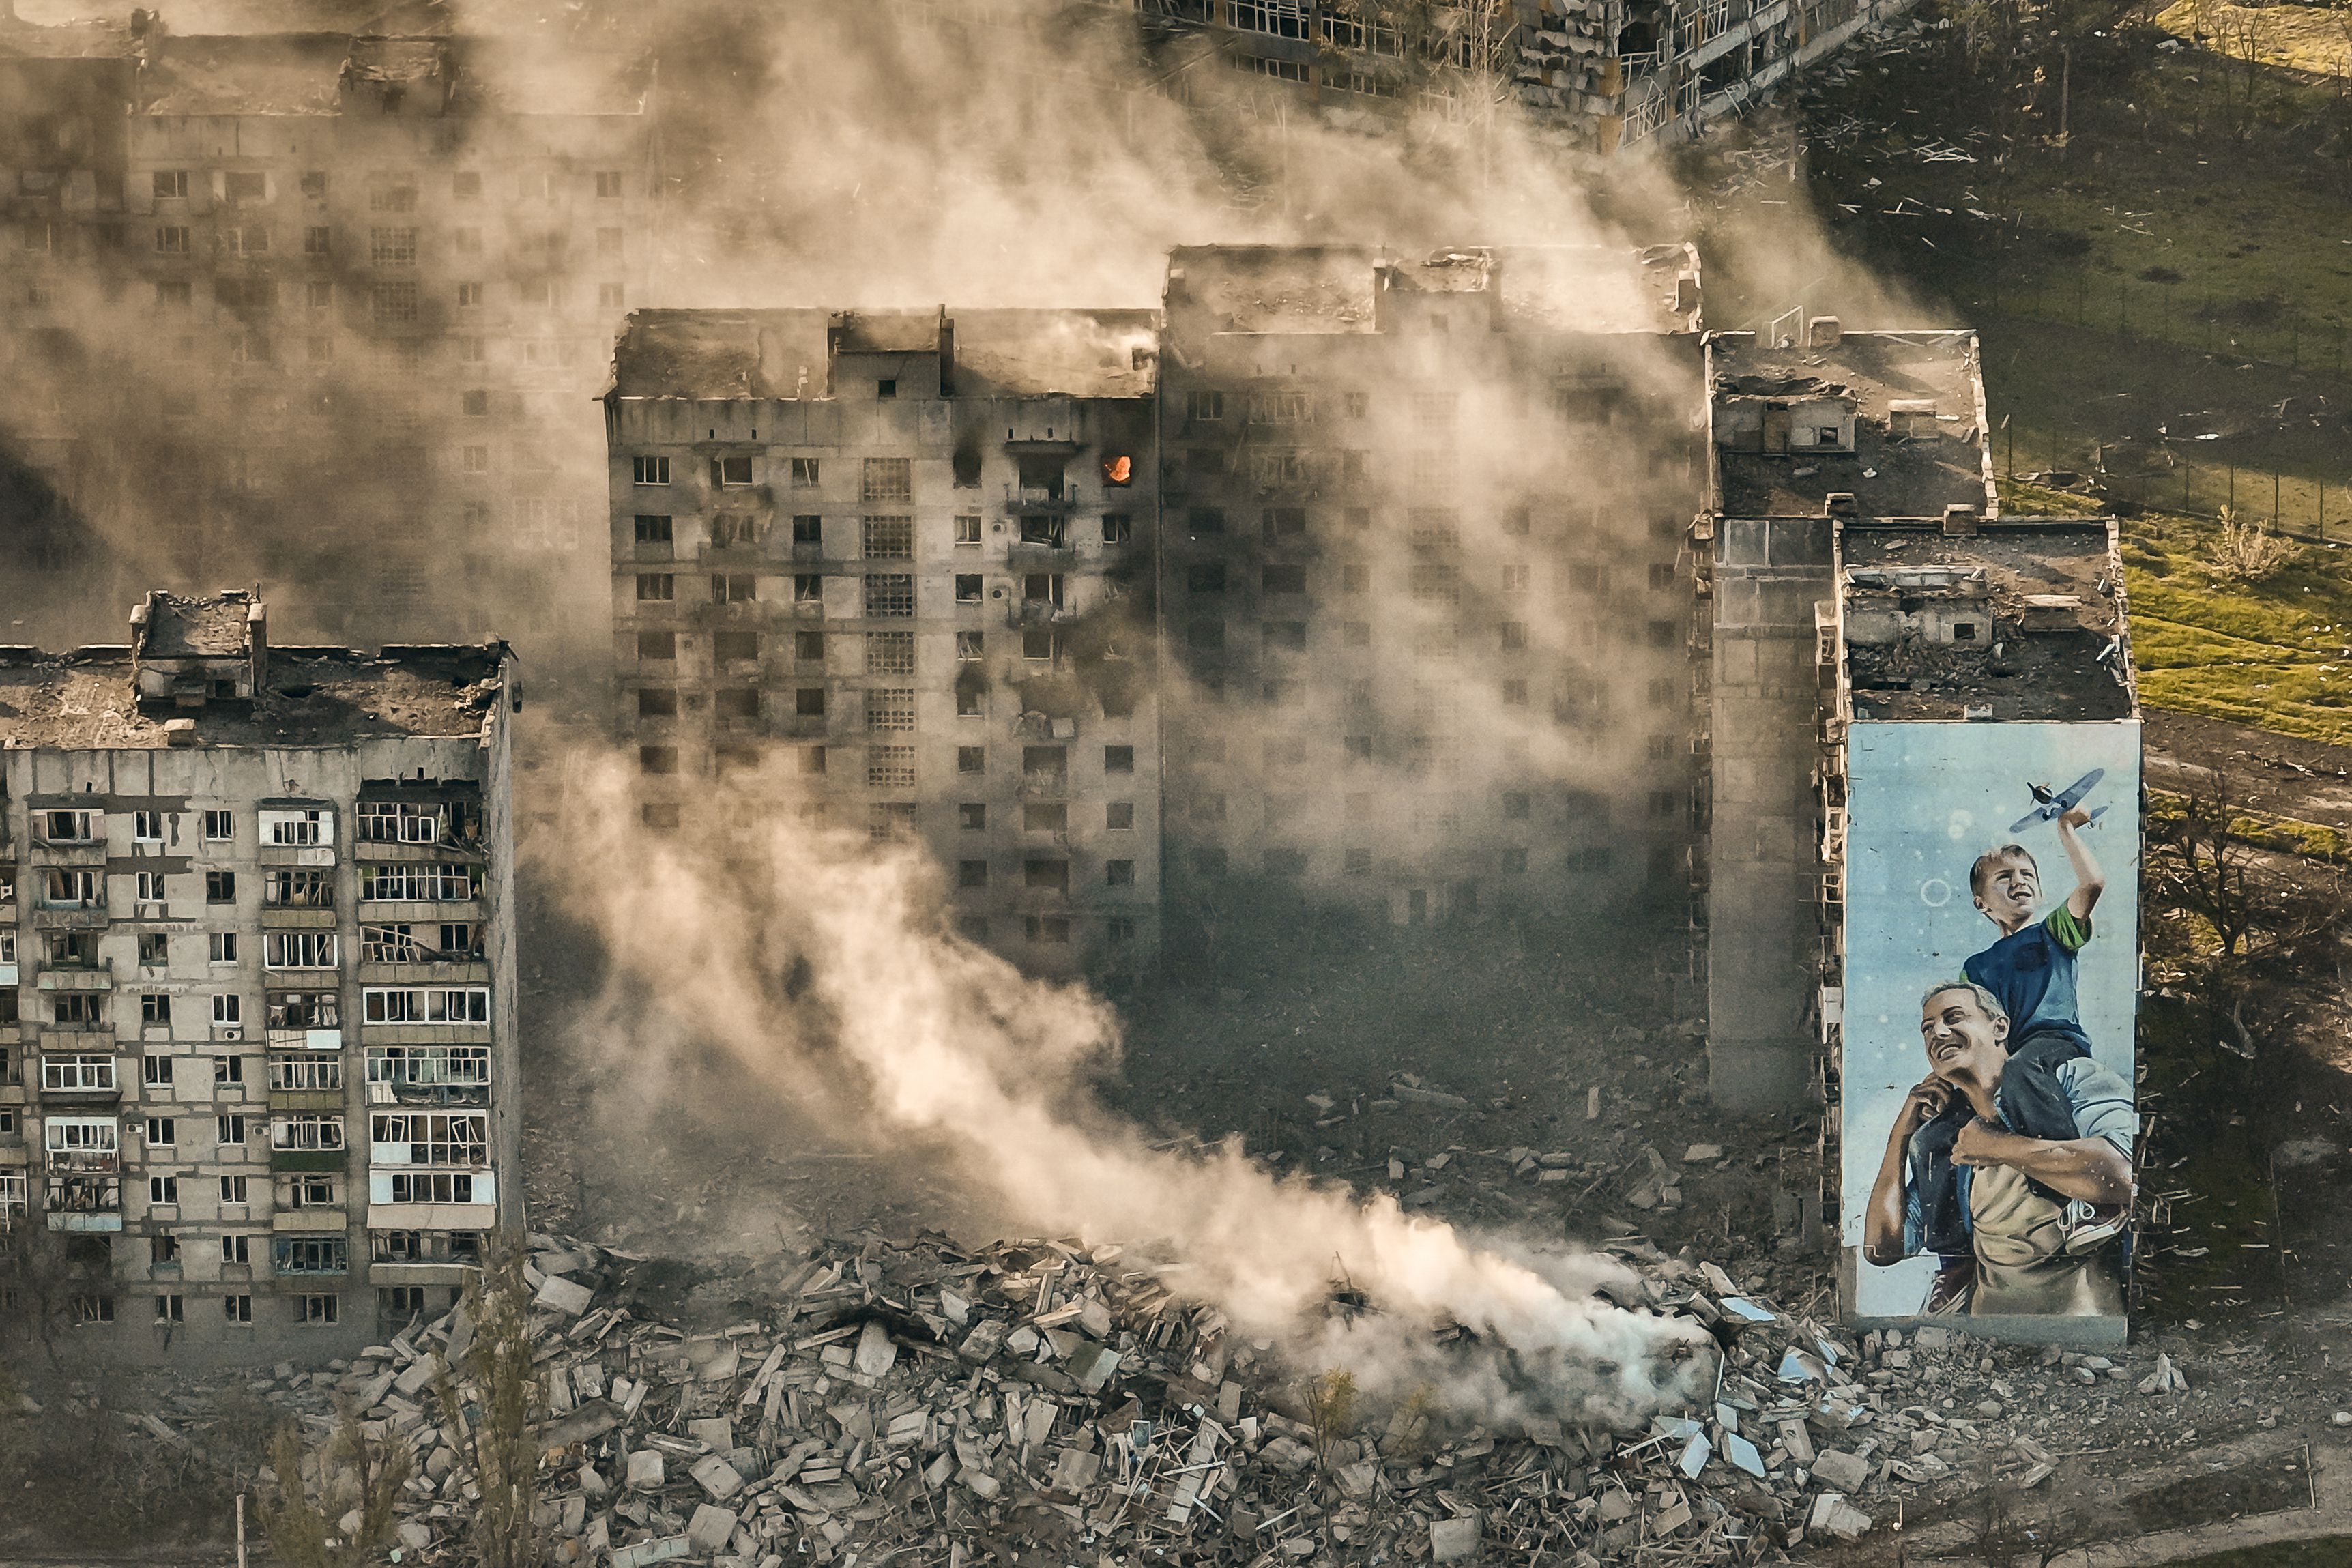 Zelensky aseveró que es fundamental “comprender” que la guerra de Ucrania viene de “una agresión no provocada”. (FOTO: AP)